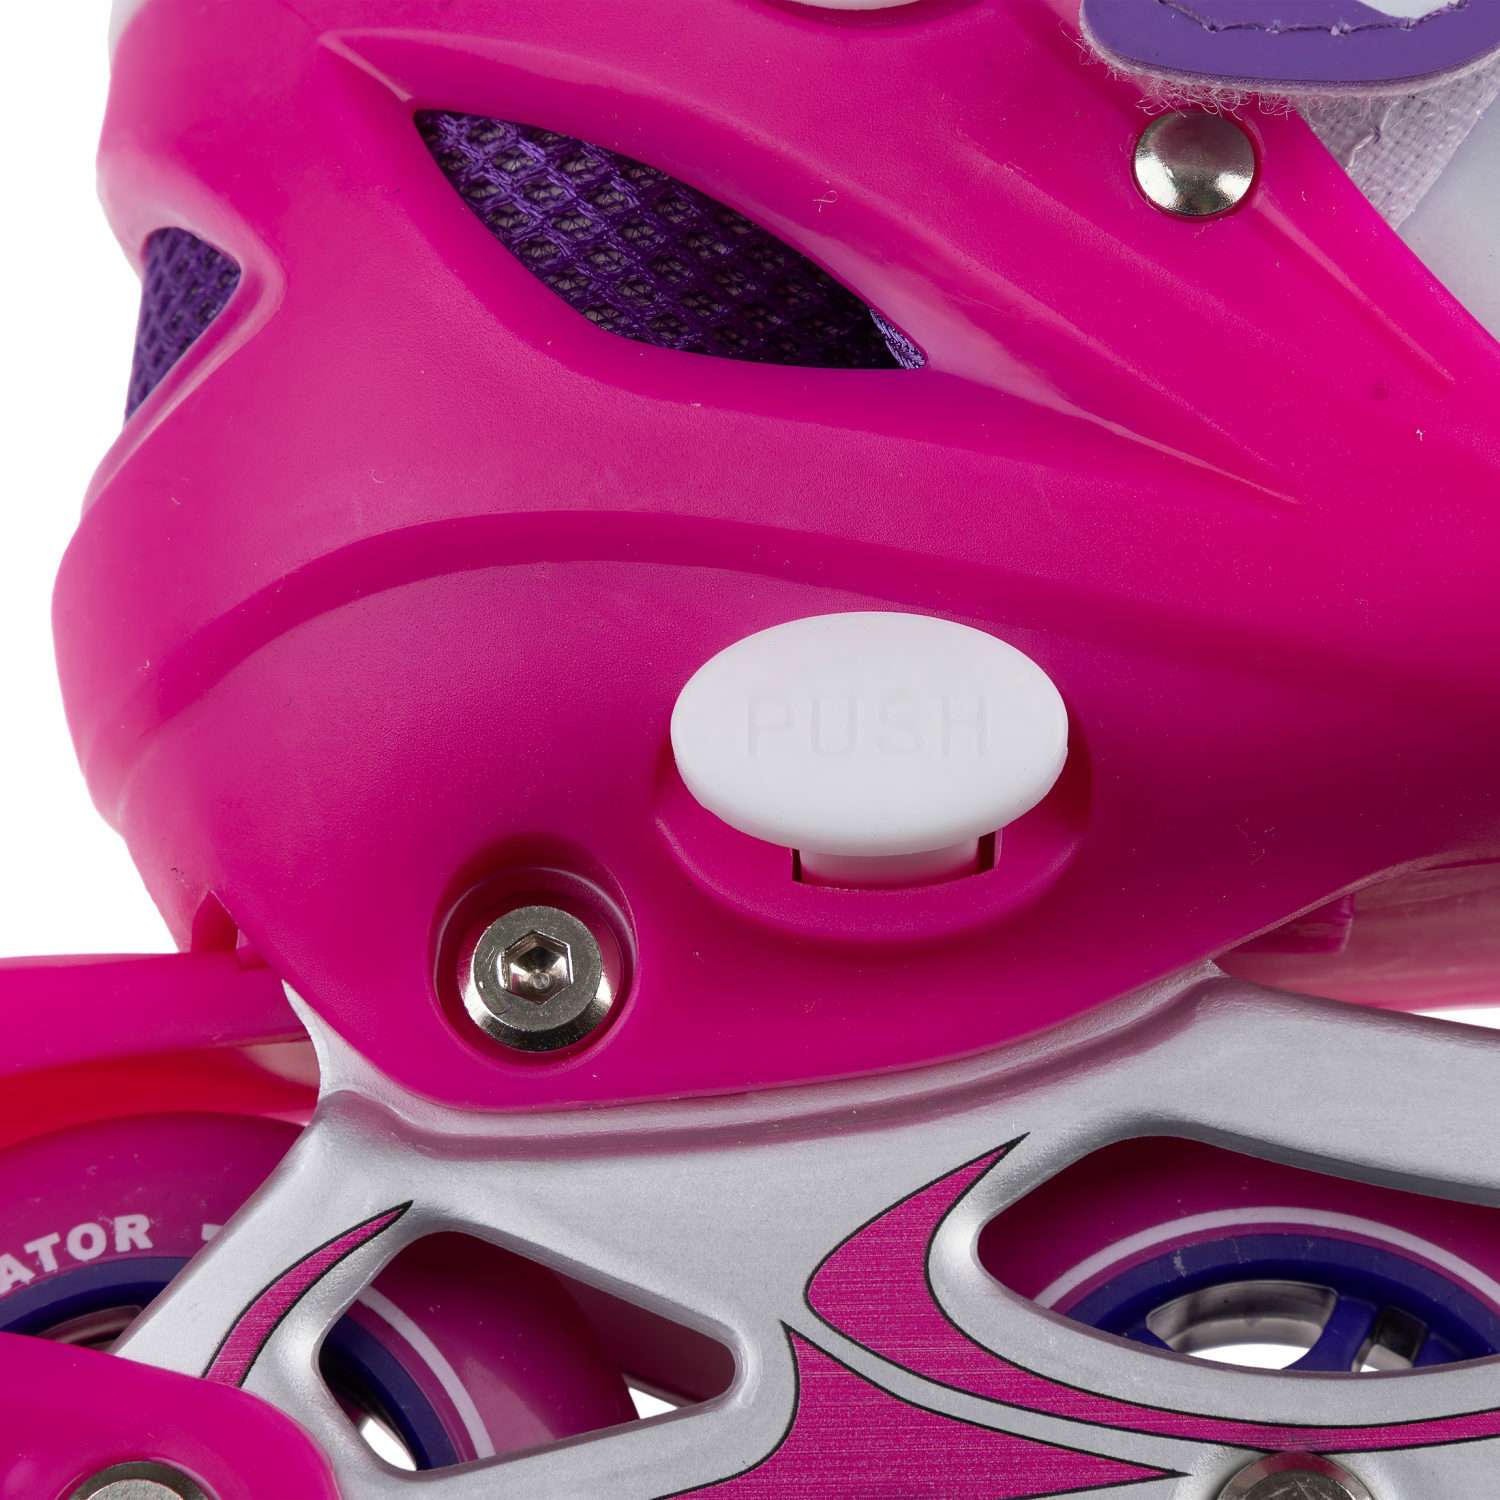 Ролики Navigator детские раздвижные 30 - 33 размер с защитой и шлемом розовый - фото 10